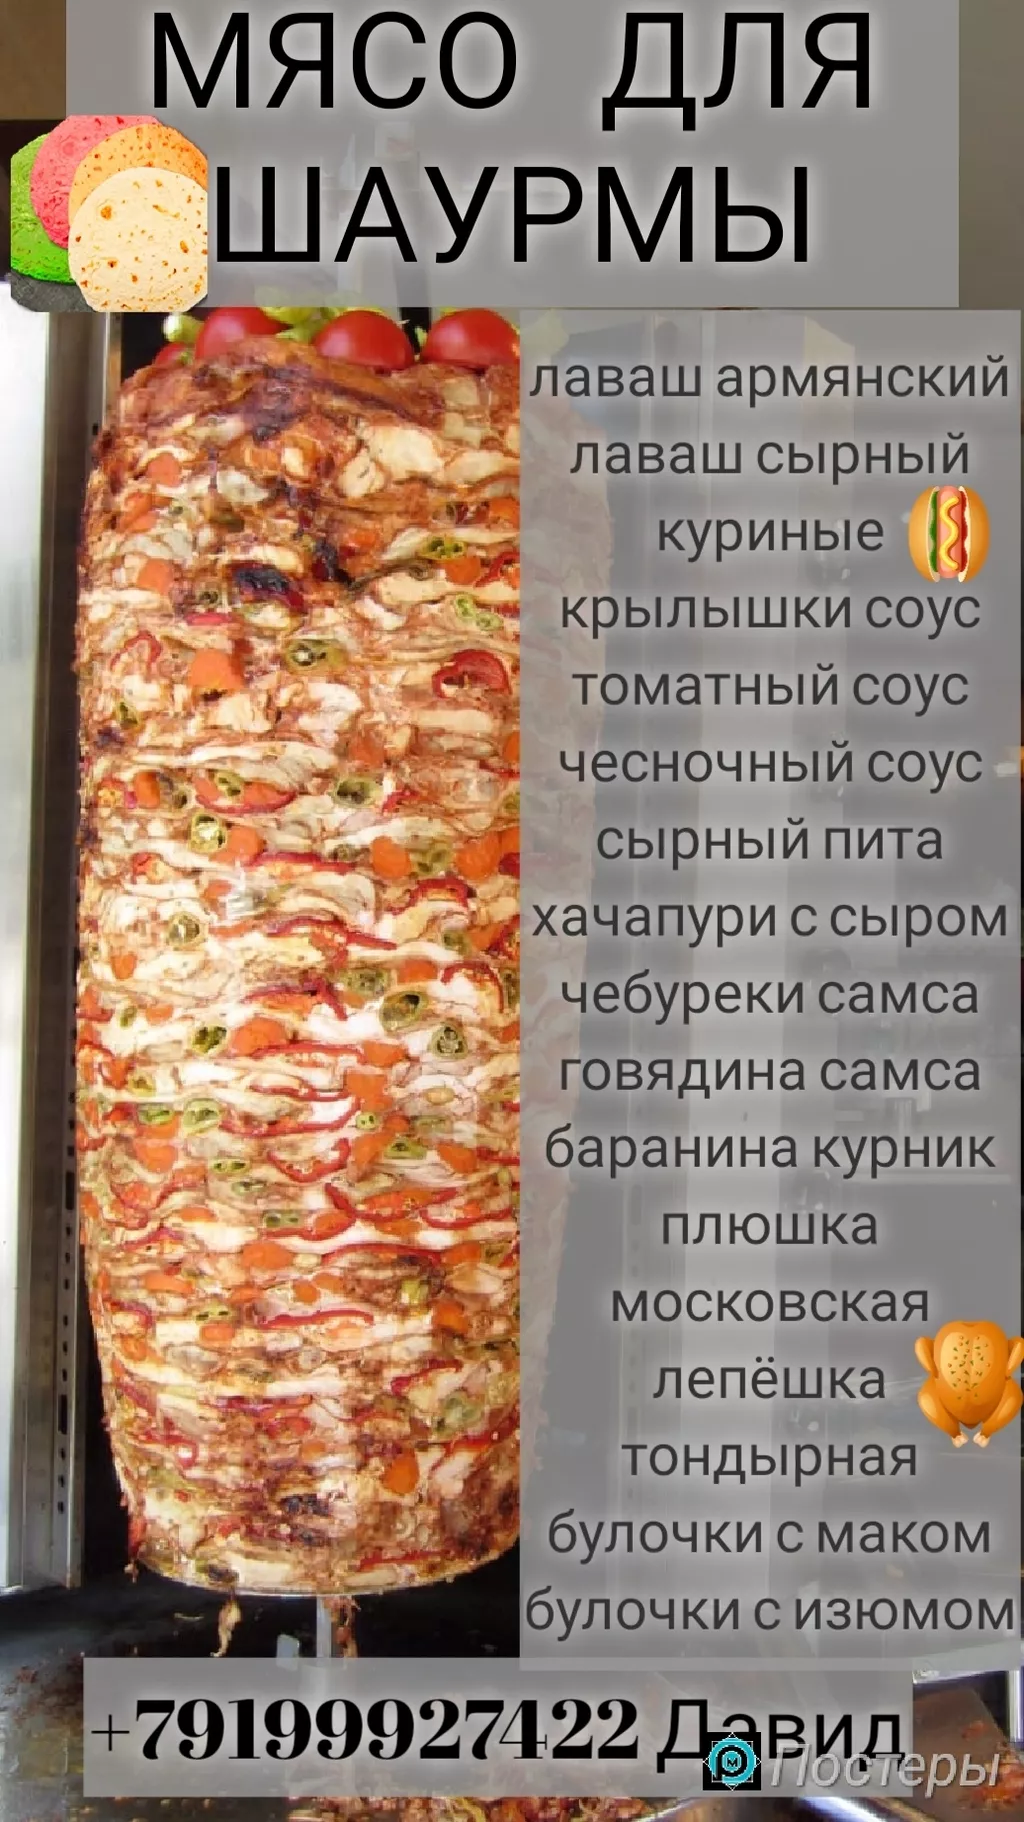 мясо для шаурмы (бабины)  в Москве 7